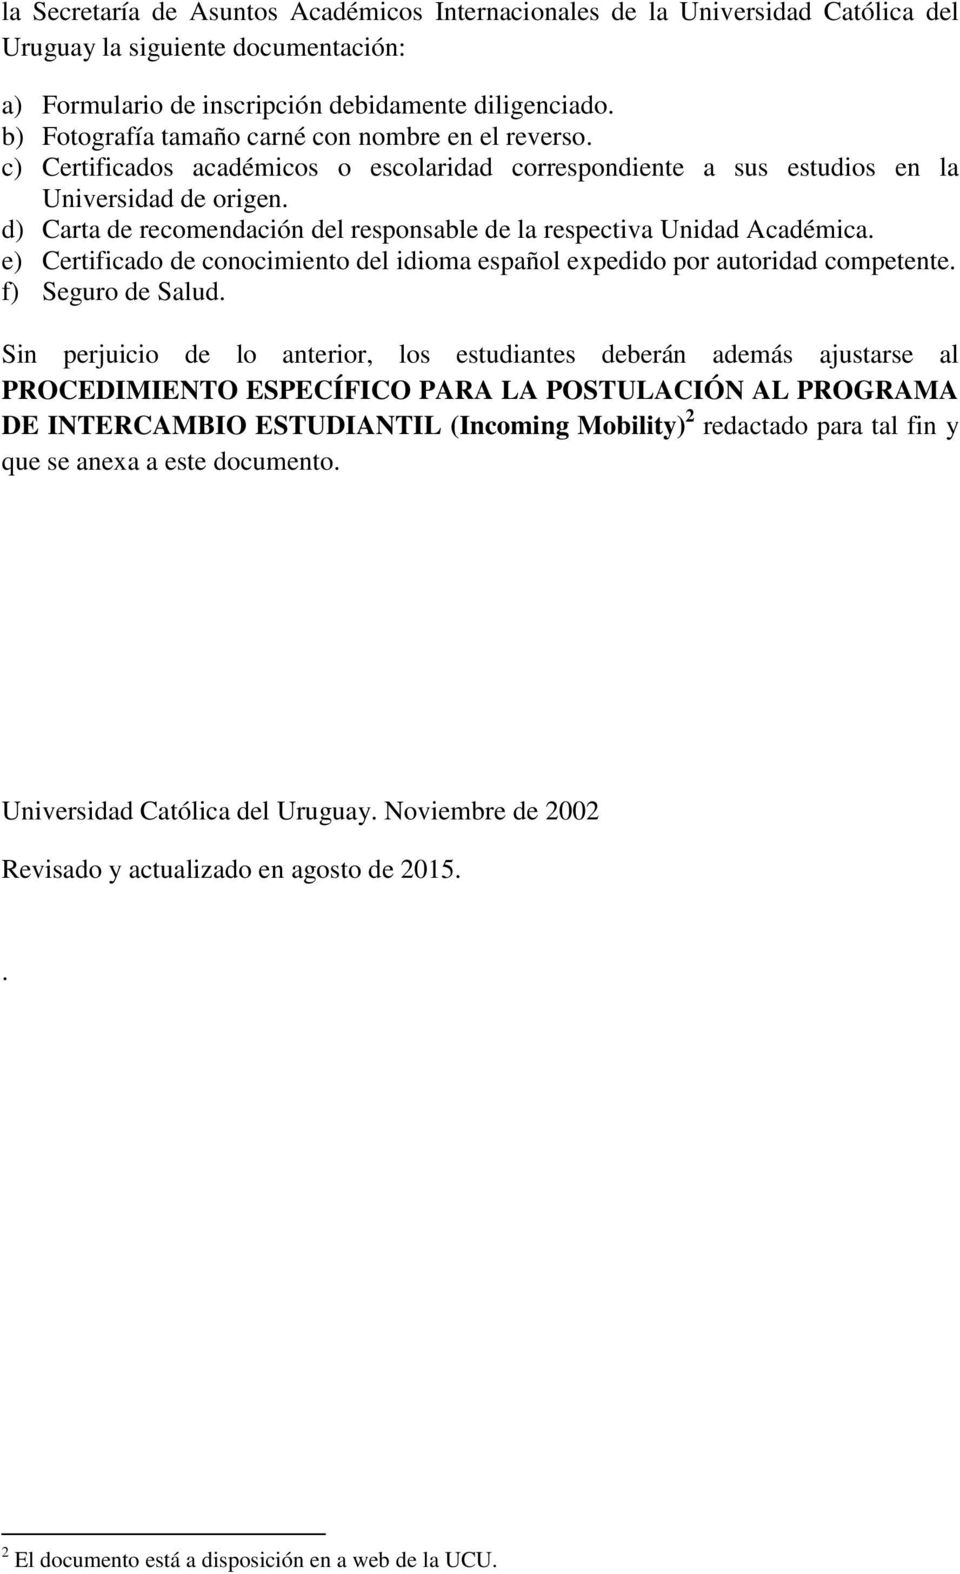 d) Carta de recomendación del responsable de la respectiva Unidad Académica. e) Certificado de conocimiento del idioma español expedido por autoridad competente. f) Seguro de Salud.